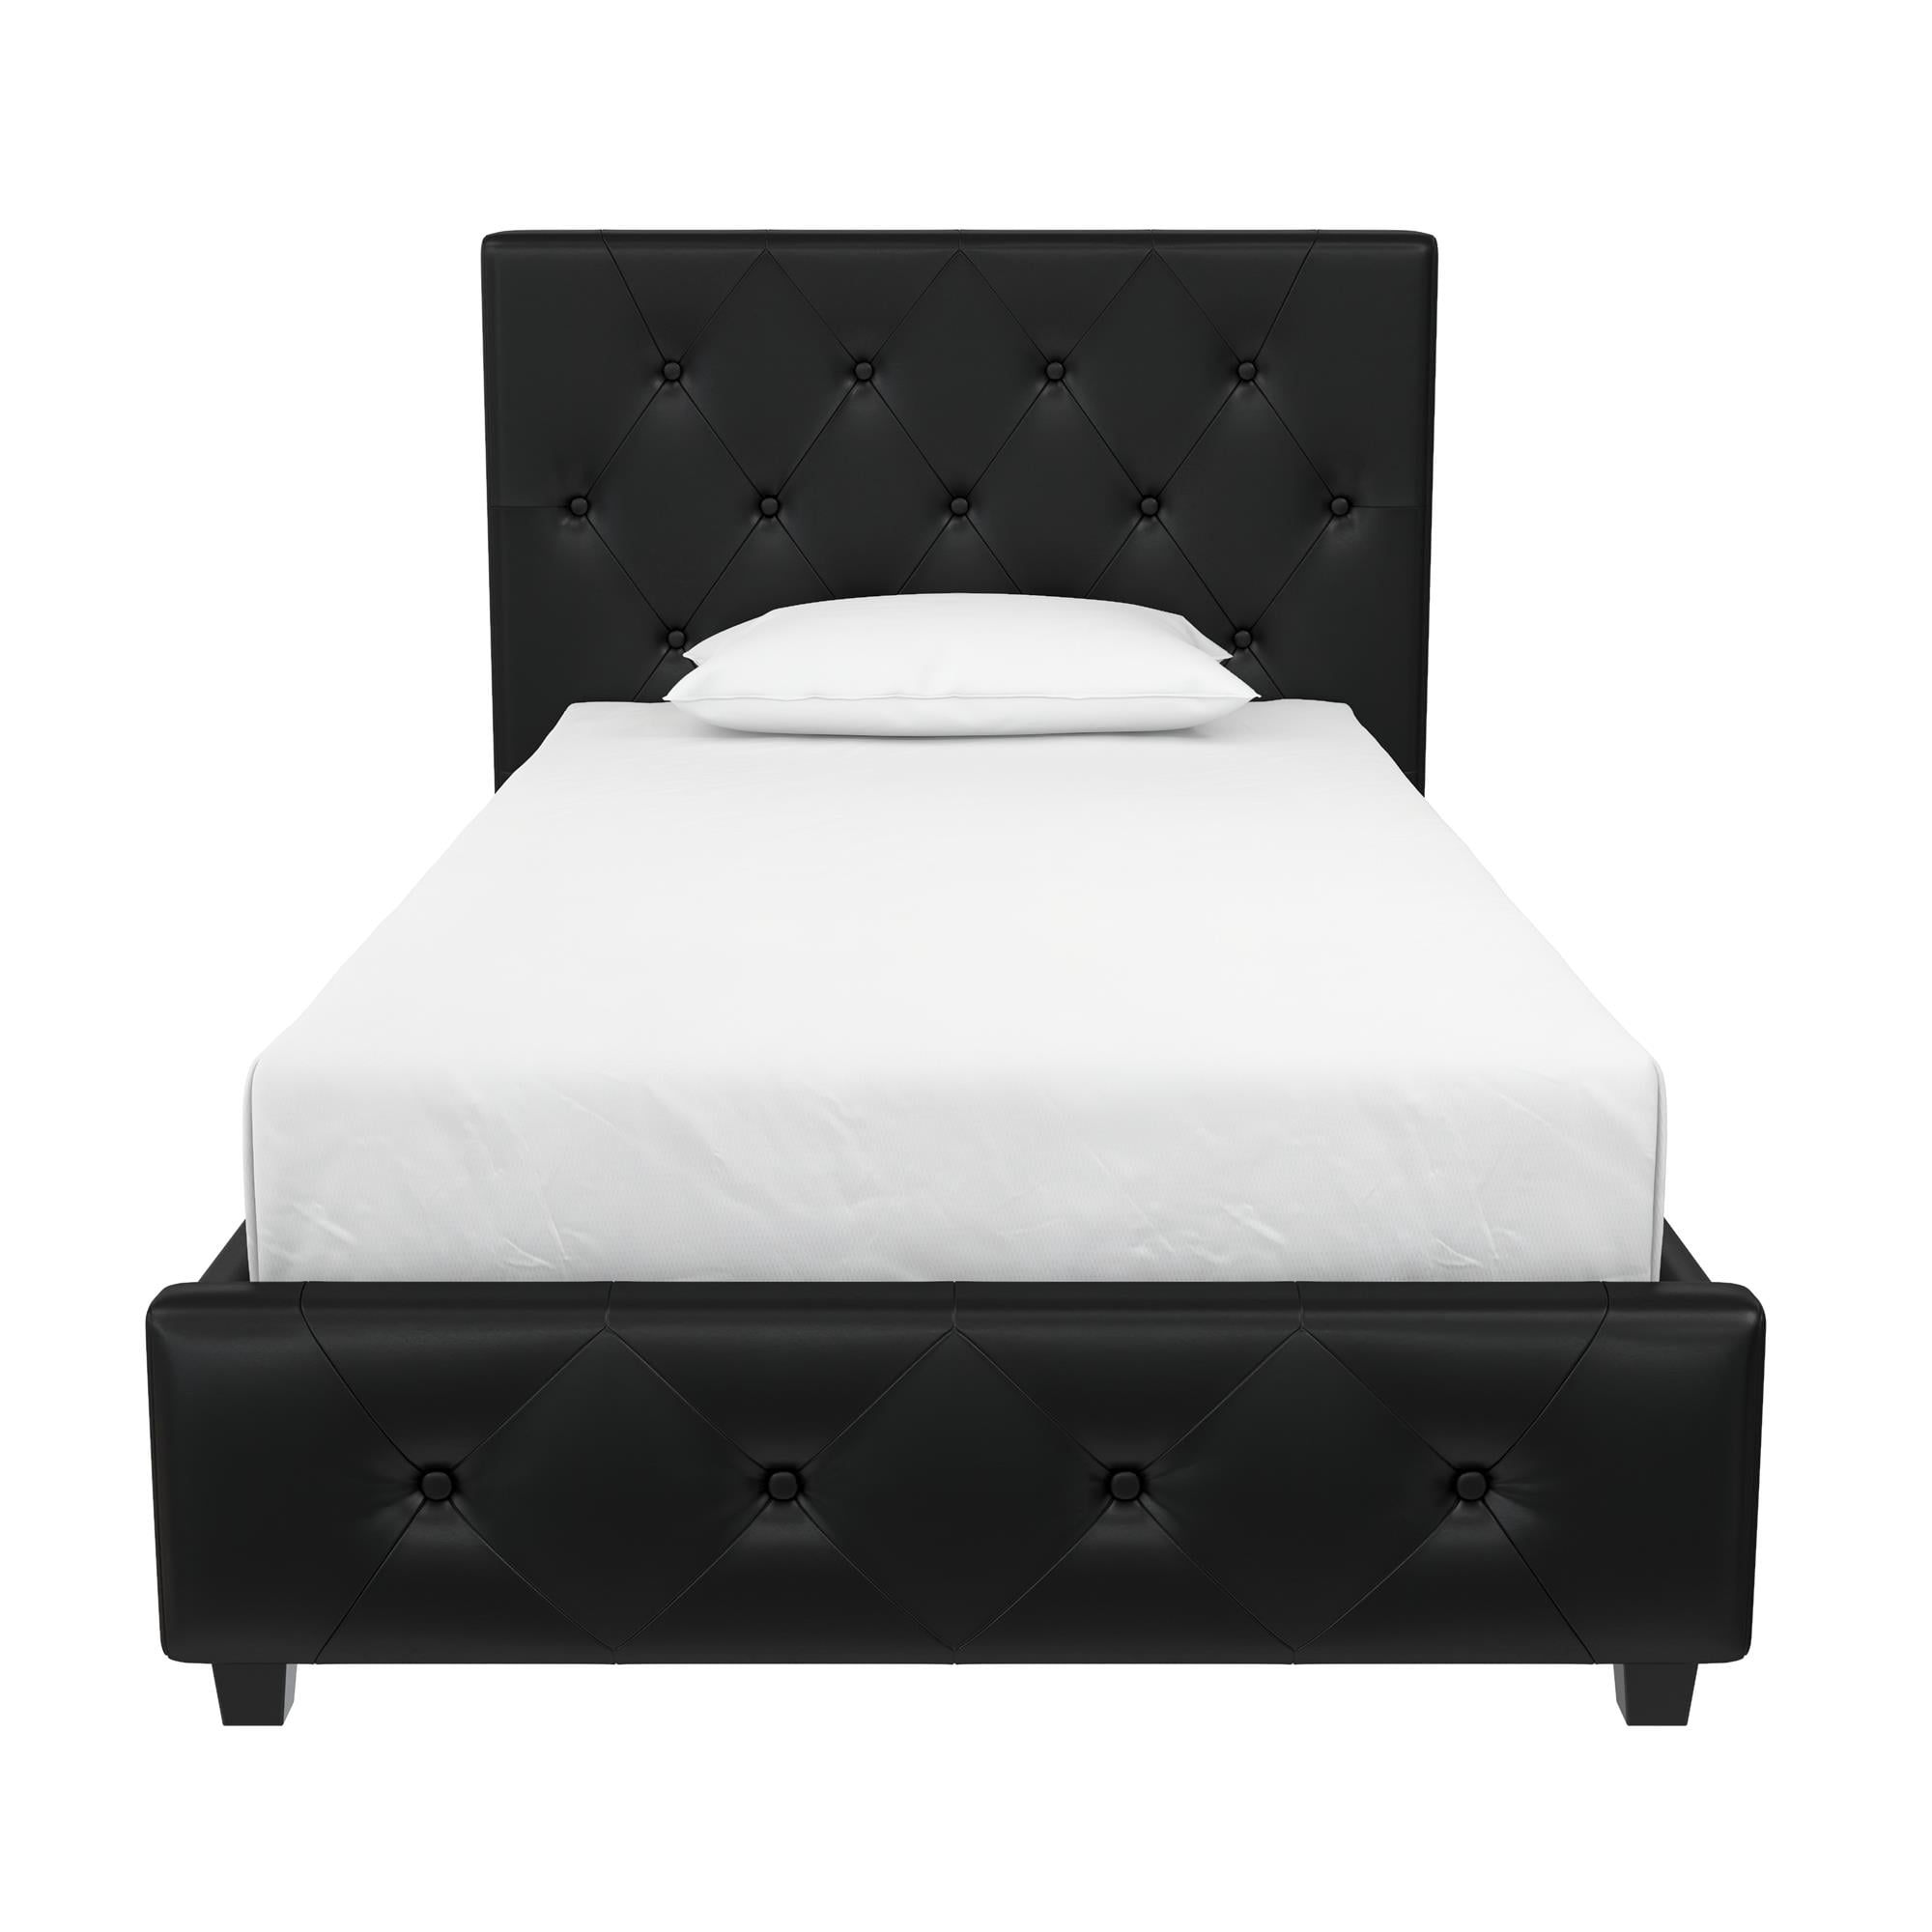 Dhp Dakota Tufted Upholstered Platform Bed Frame Twin Black Faux Leather